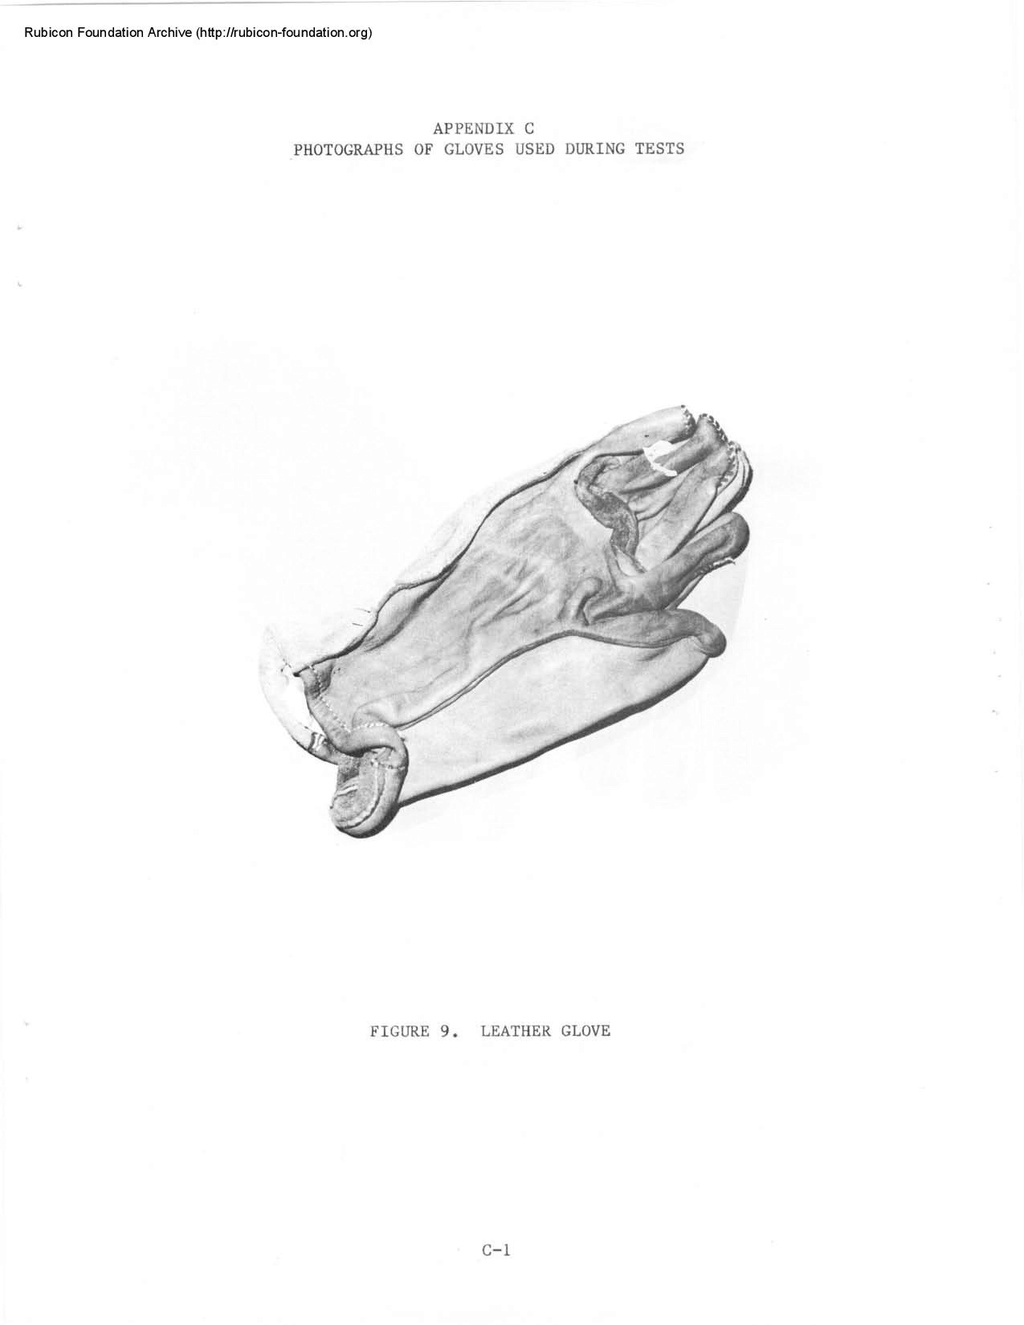 Tests US Navy quartz Seiko, Casio, UDT, Heuer 1910